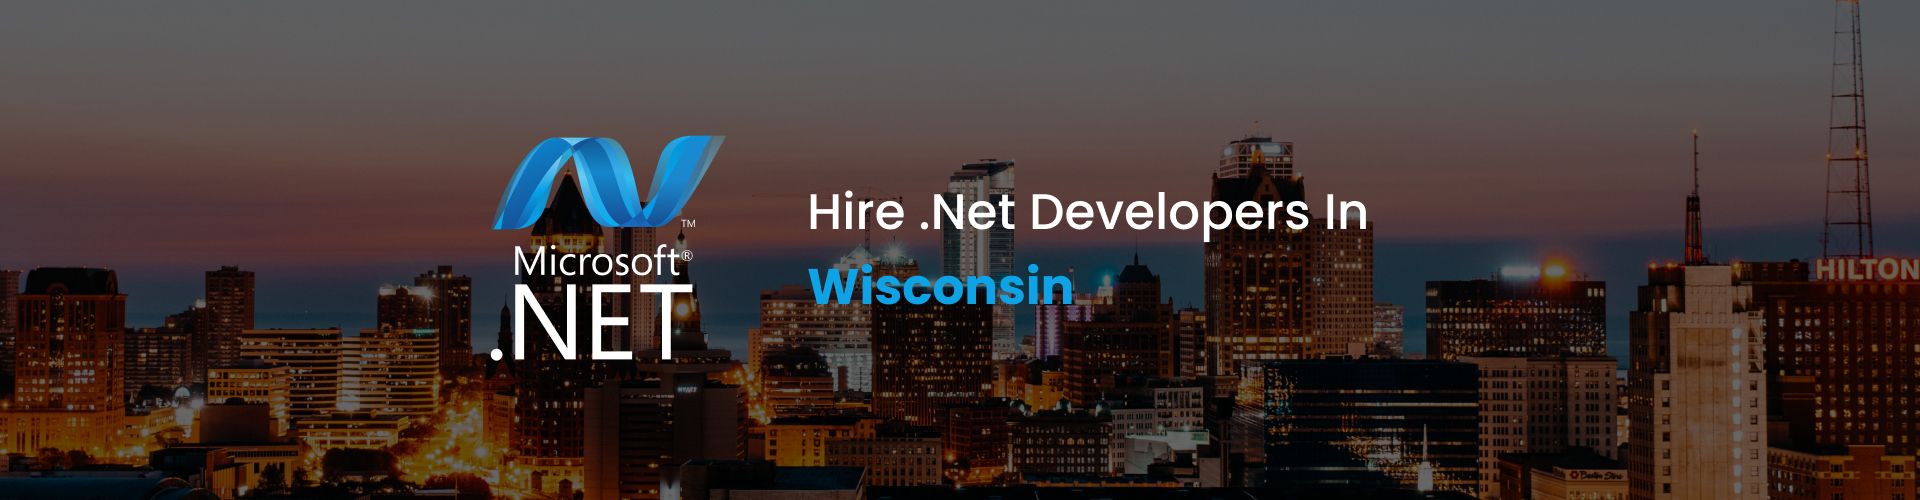 hire dot net developers in wisconsin